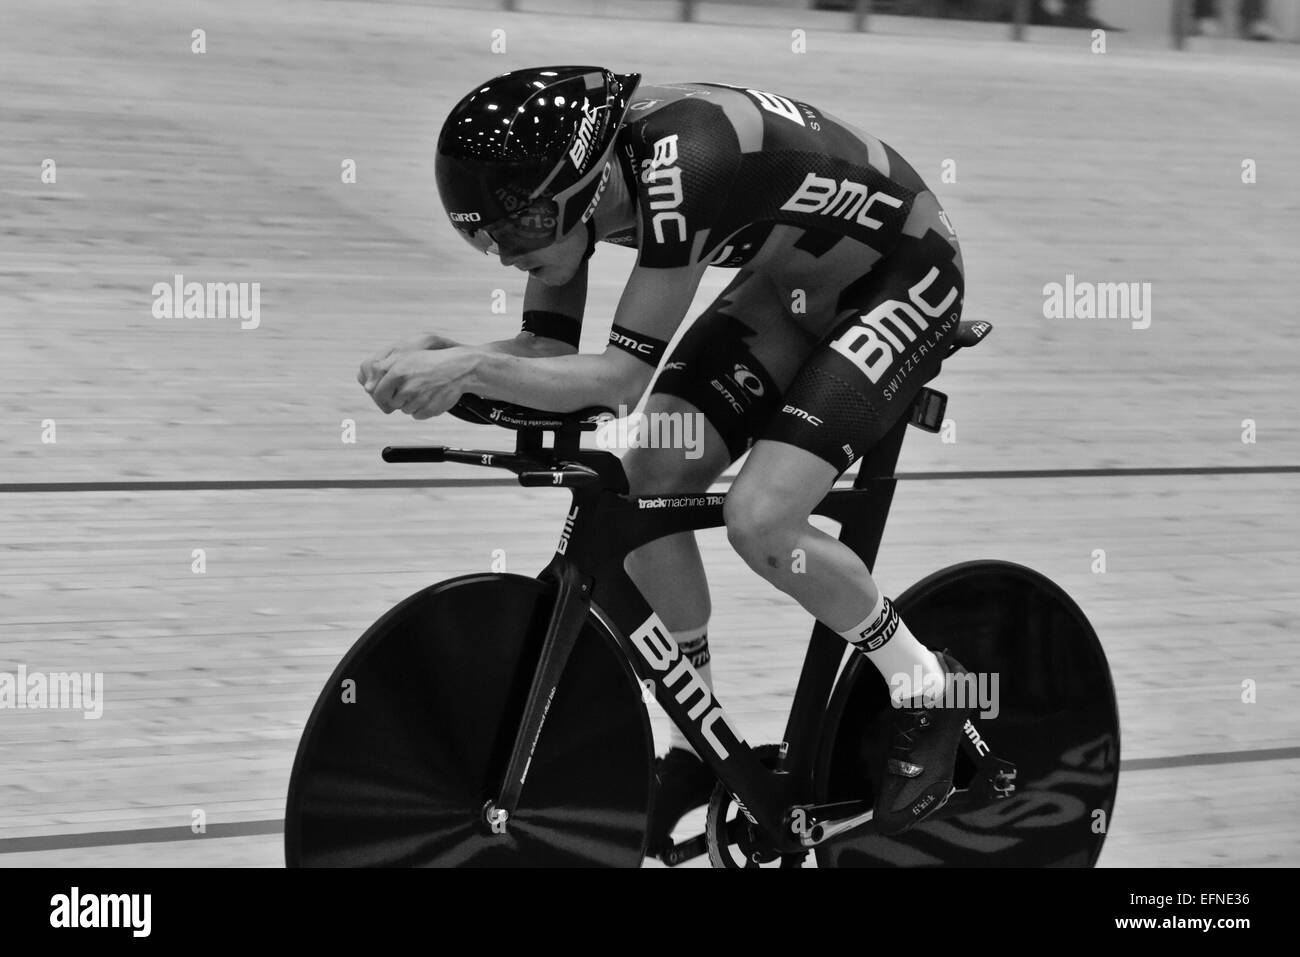 Neuchâtel, Suisse. Le 08 février, 2015. Tentative de Record du Monde UCI Heure Rohan Dennis - BMC Racing Team Crédit : Guy Swarbrick/trackcycling.net/Alamy Live News Banque D'Images